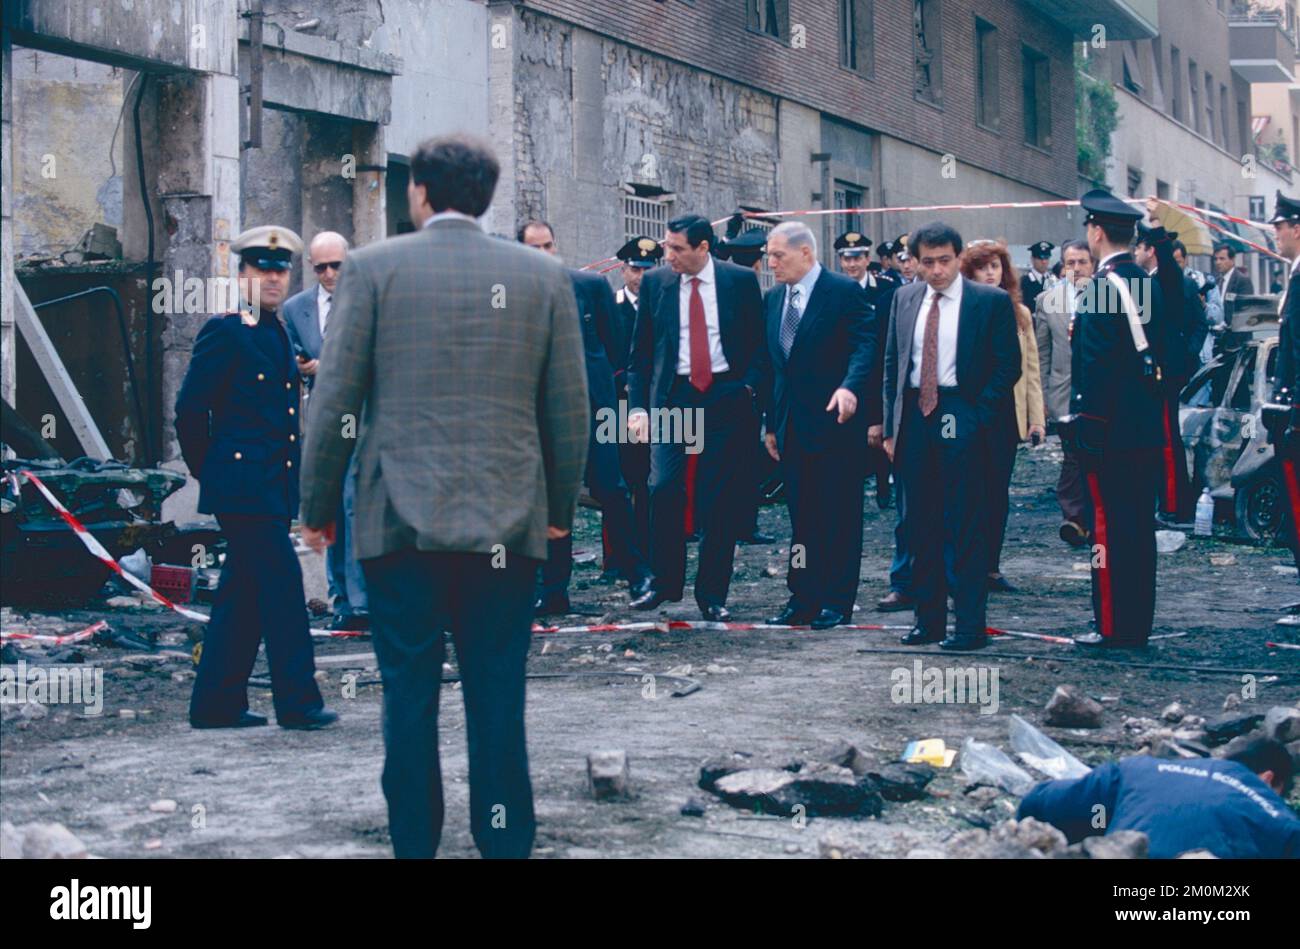 Italian Interior Minister Nicola Mancino (left) and Police Chief Vincenzo Parisi at the site of the mafia-terrorist bombing attack in Via Ruggero Fauro, Rome, Italy 1992 Stock Photo